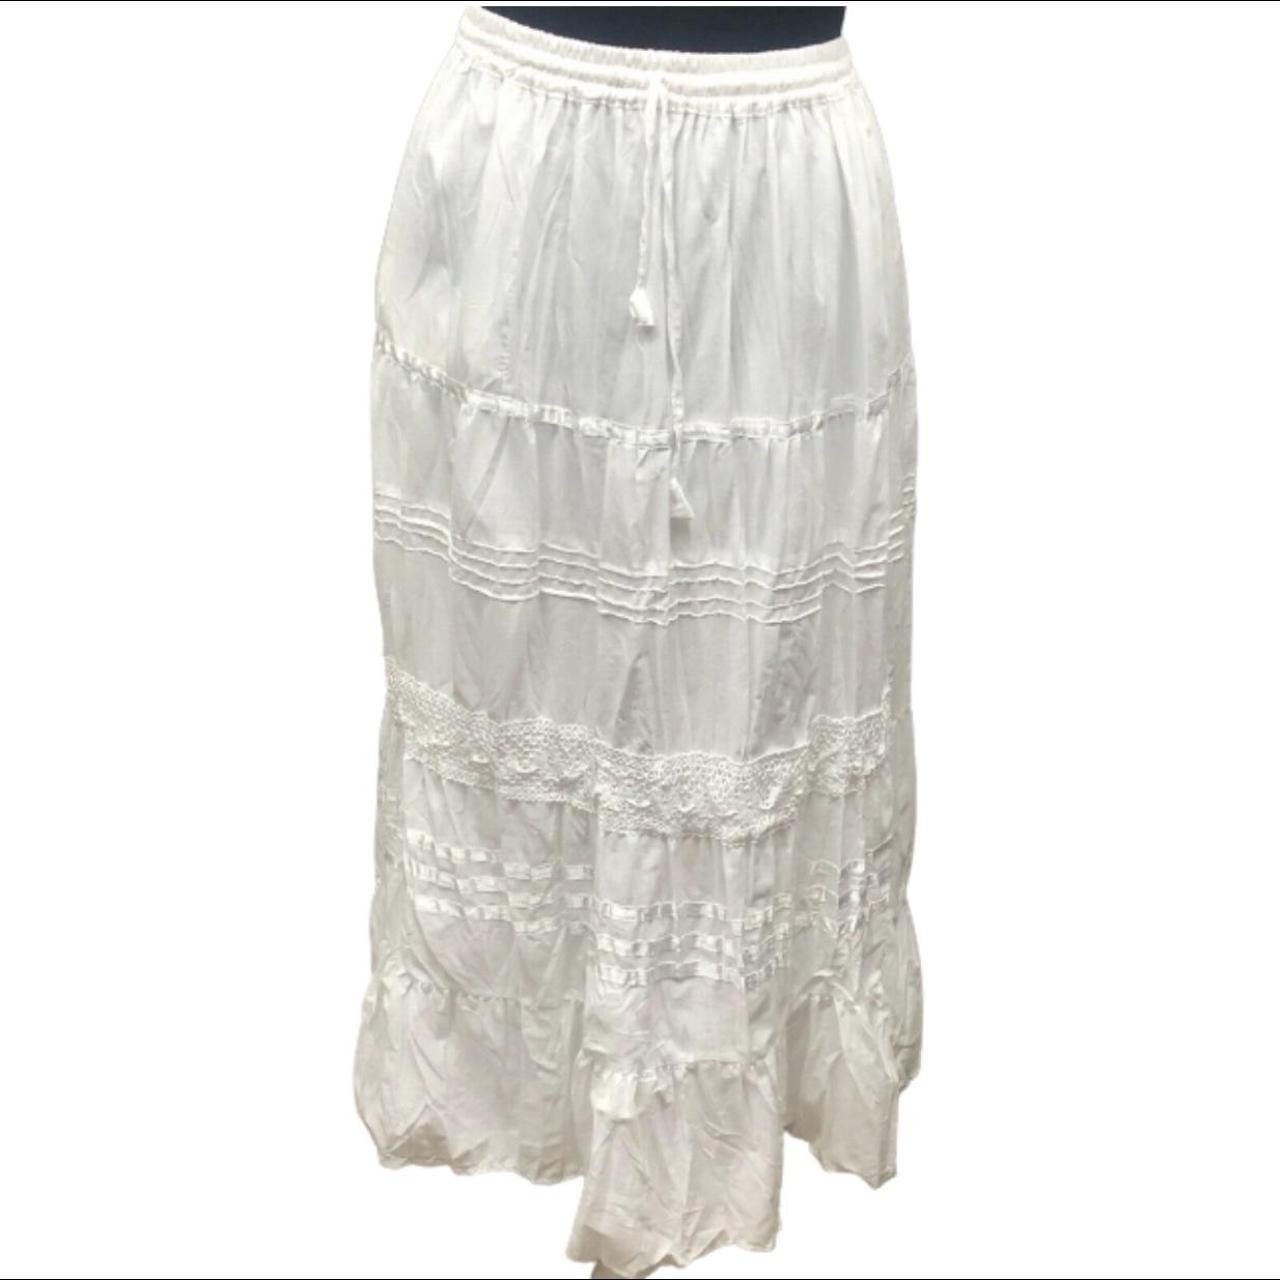 Women's White Skirt | Depop